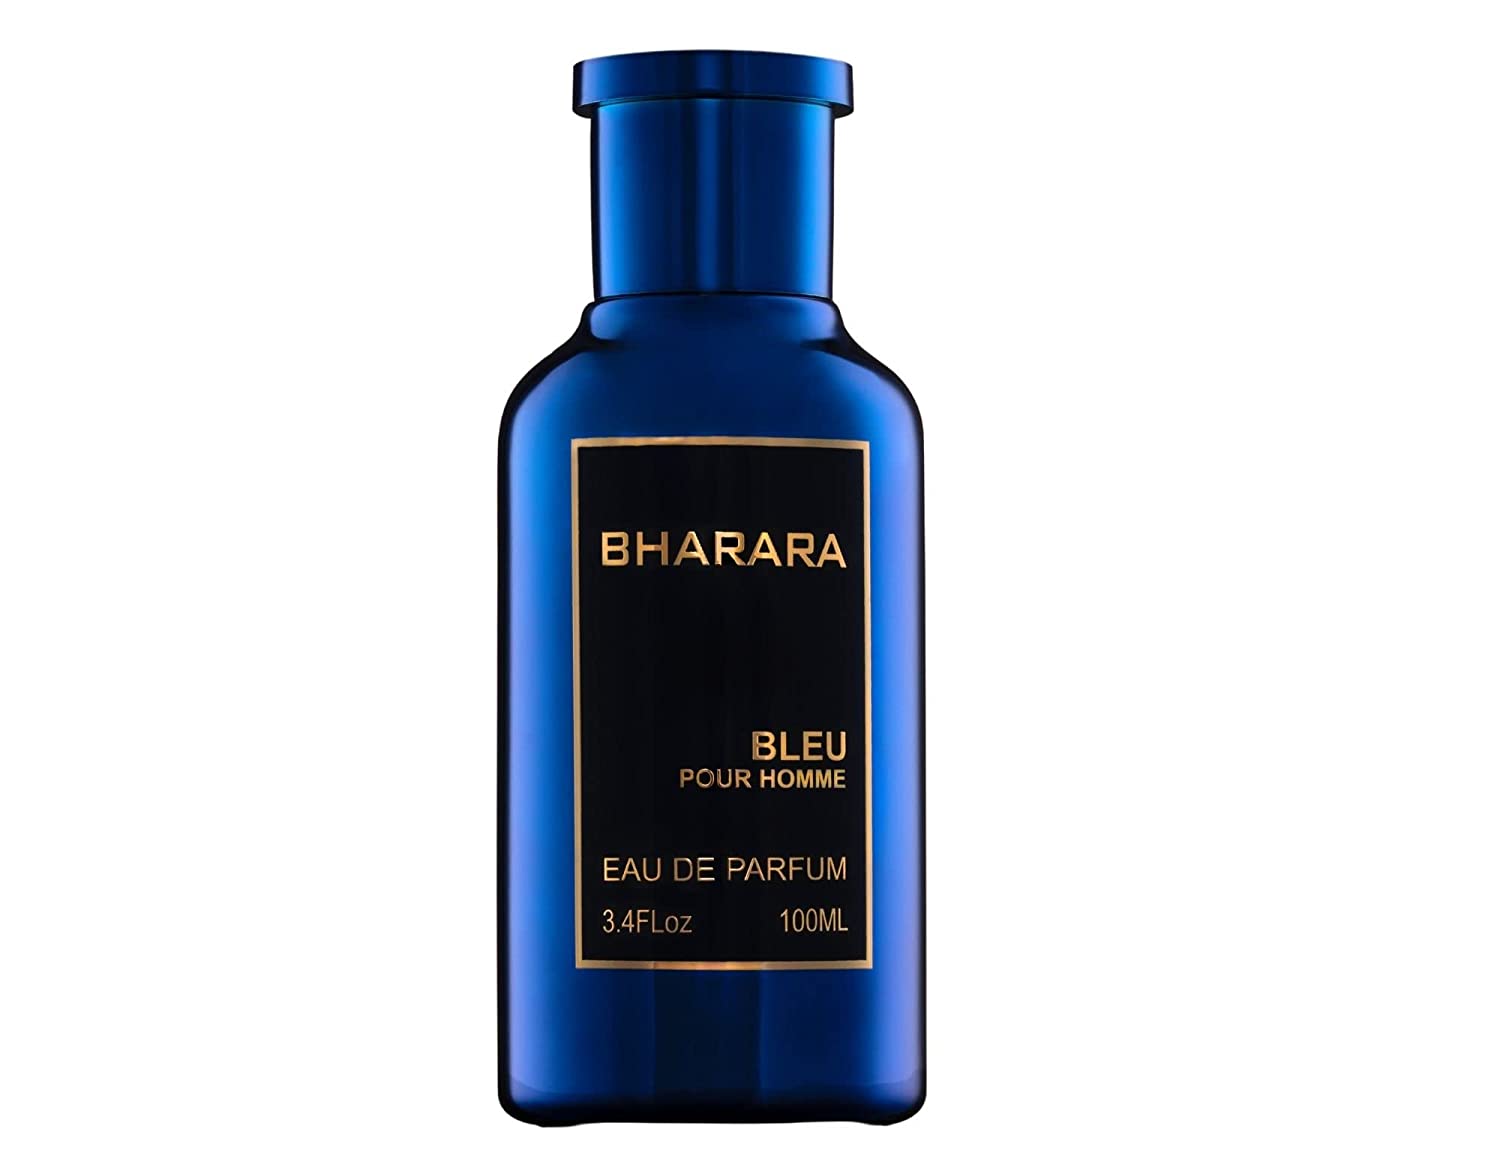 Bharara Beauty Fragnances